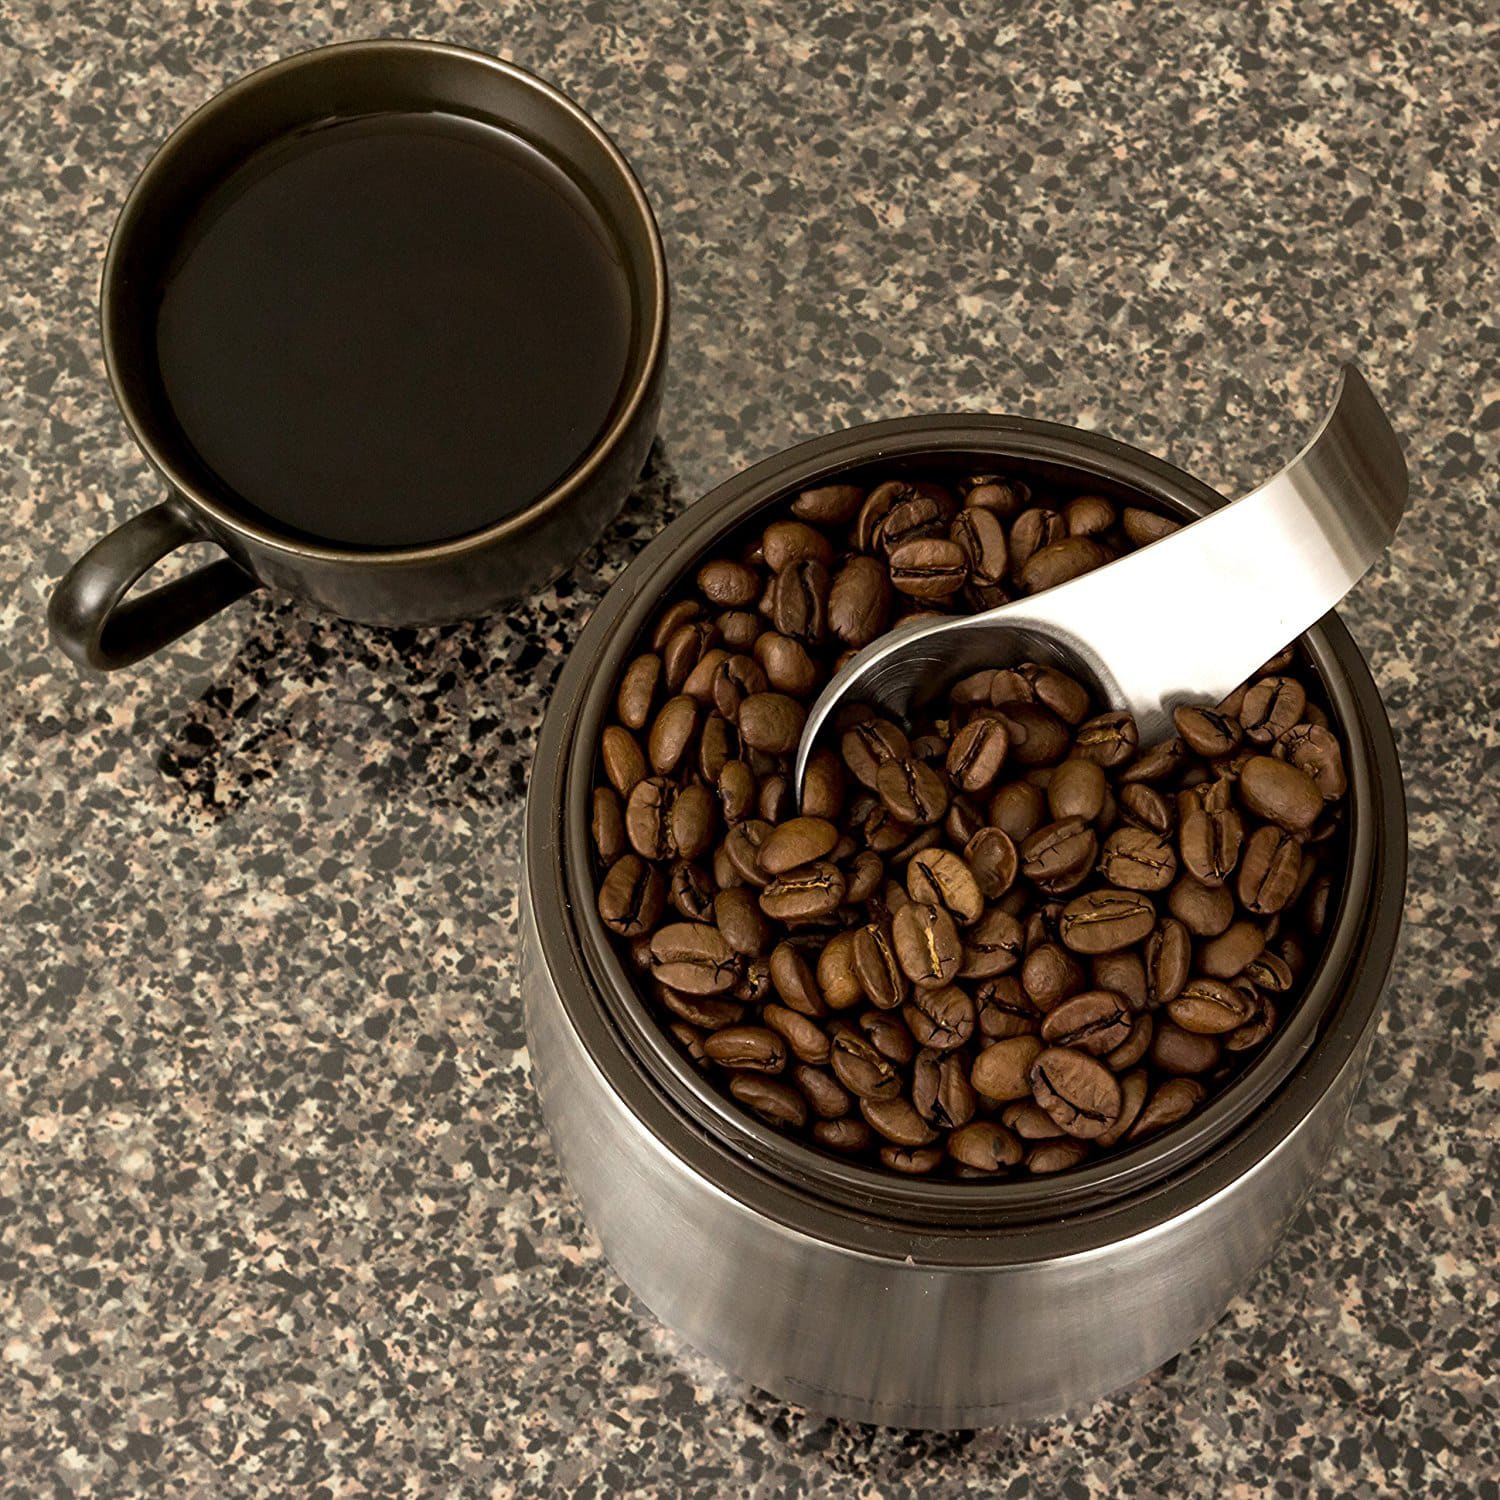 Контейнер для кофе в зернах. Кофейные зерна в банке. Банка для зернового кофе. Пепельница с кофейными зернами.